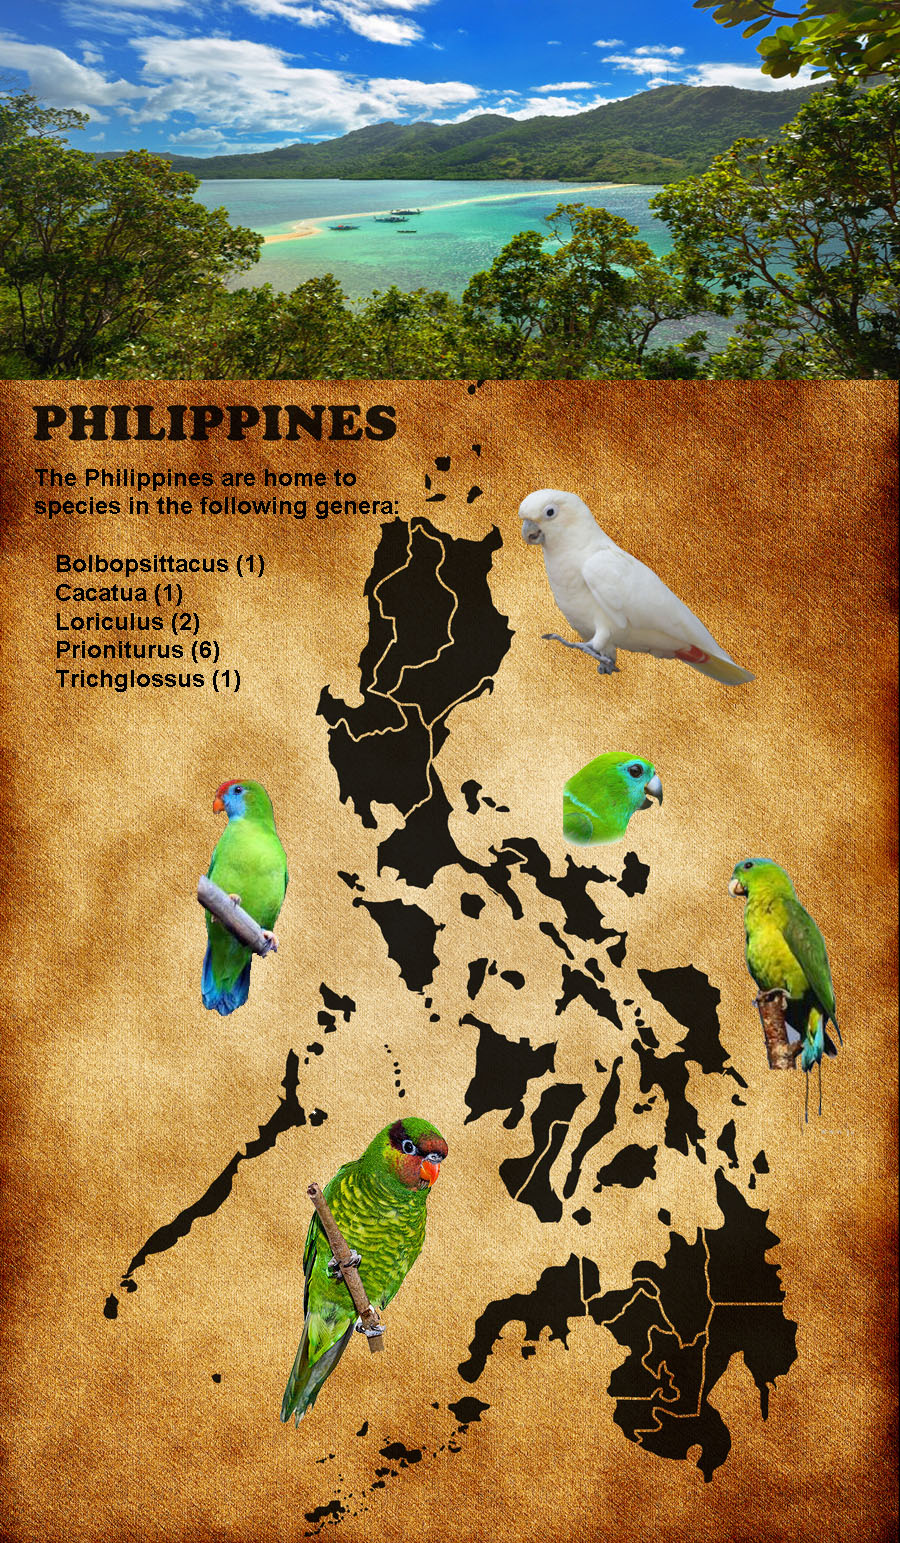 Philippine background